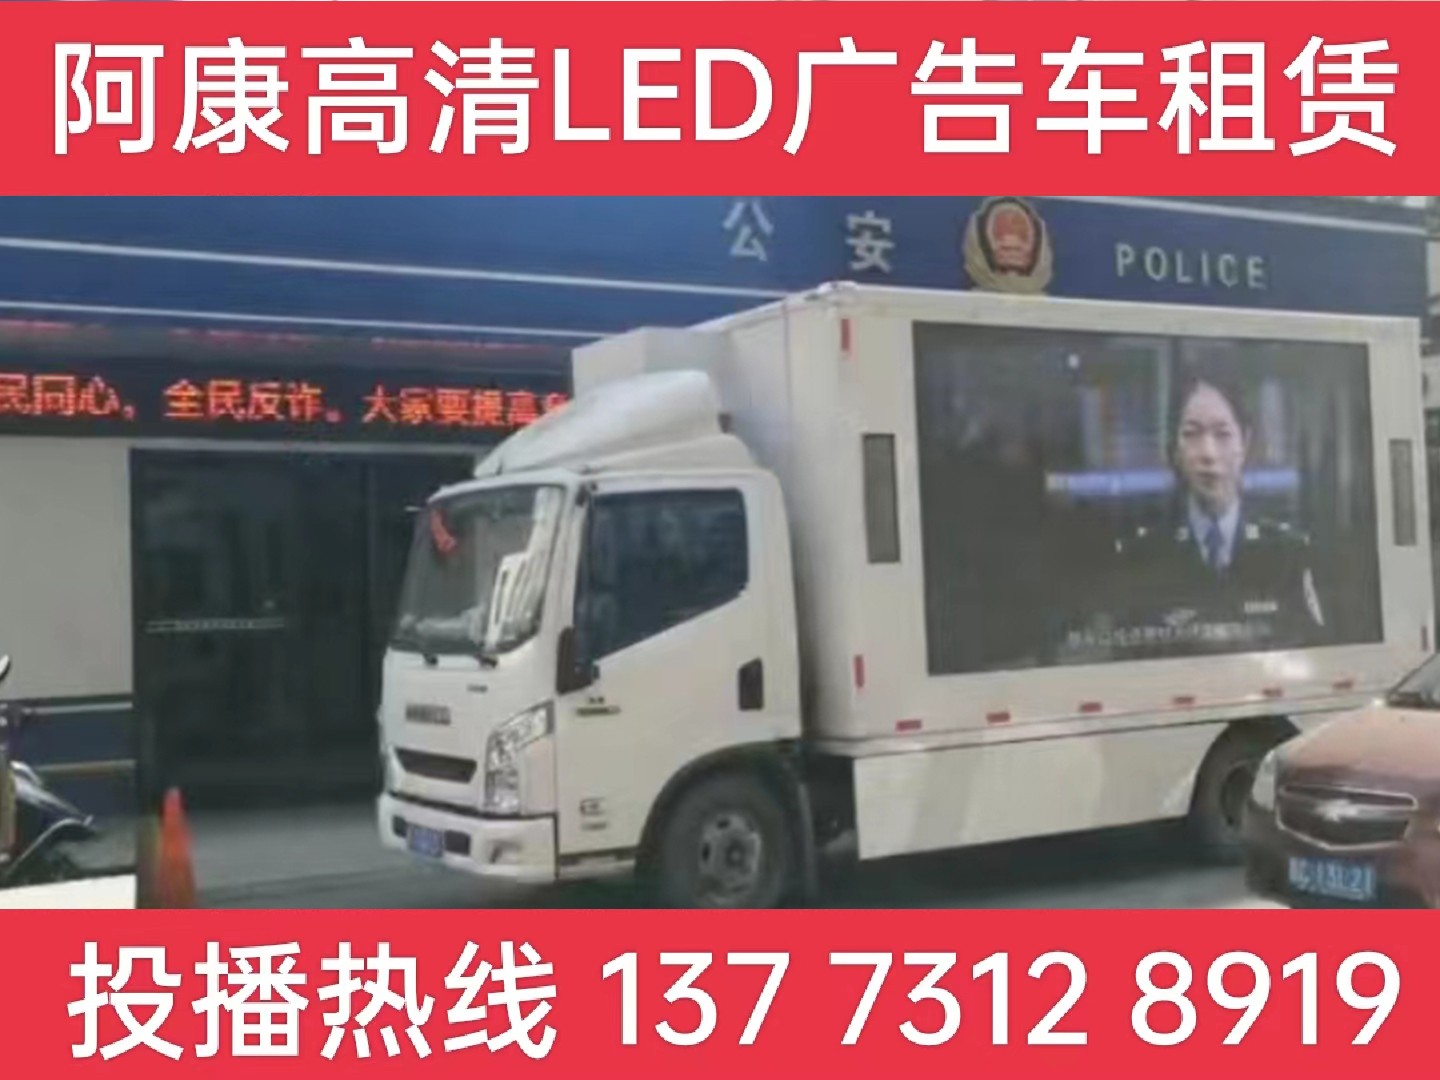 启东LED广告车租赁-反诈宣传